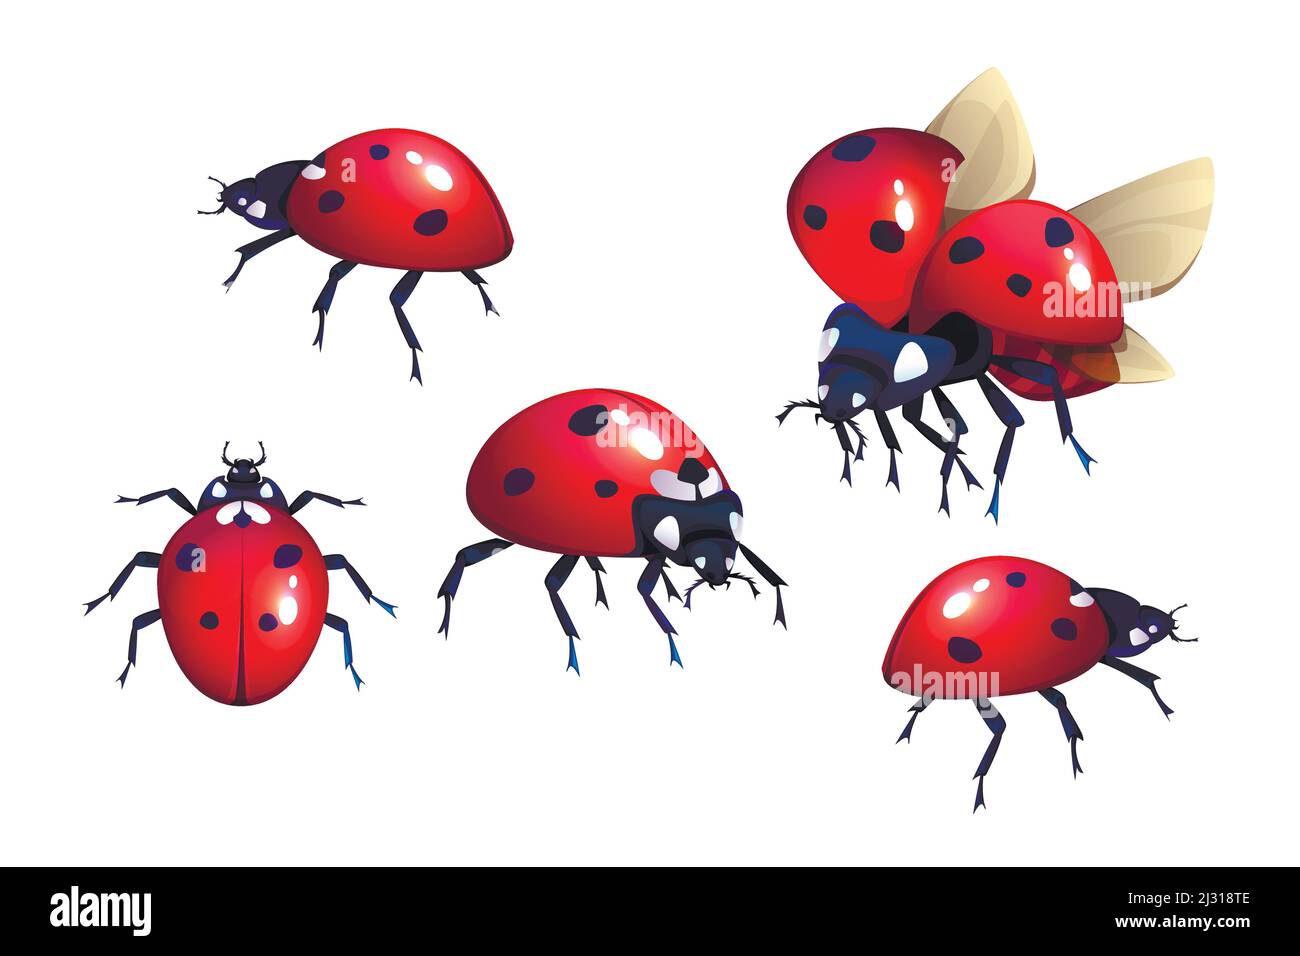 Ladybug o ladybird, rosso con macchie nere coleotteri, alato di insetti volanti set di cartoni animati realistiche illustrazioni vettoriali isolato su sfondo bianco, coc Illustrazione Vettoriale